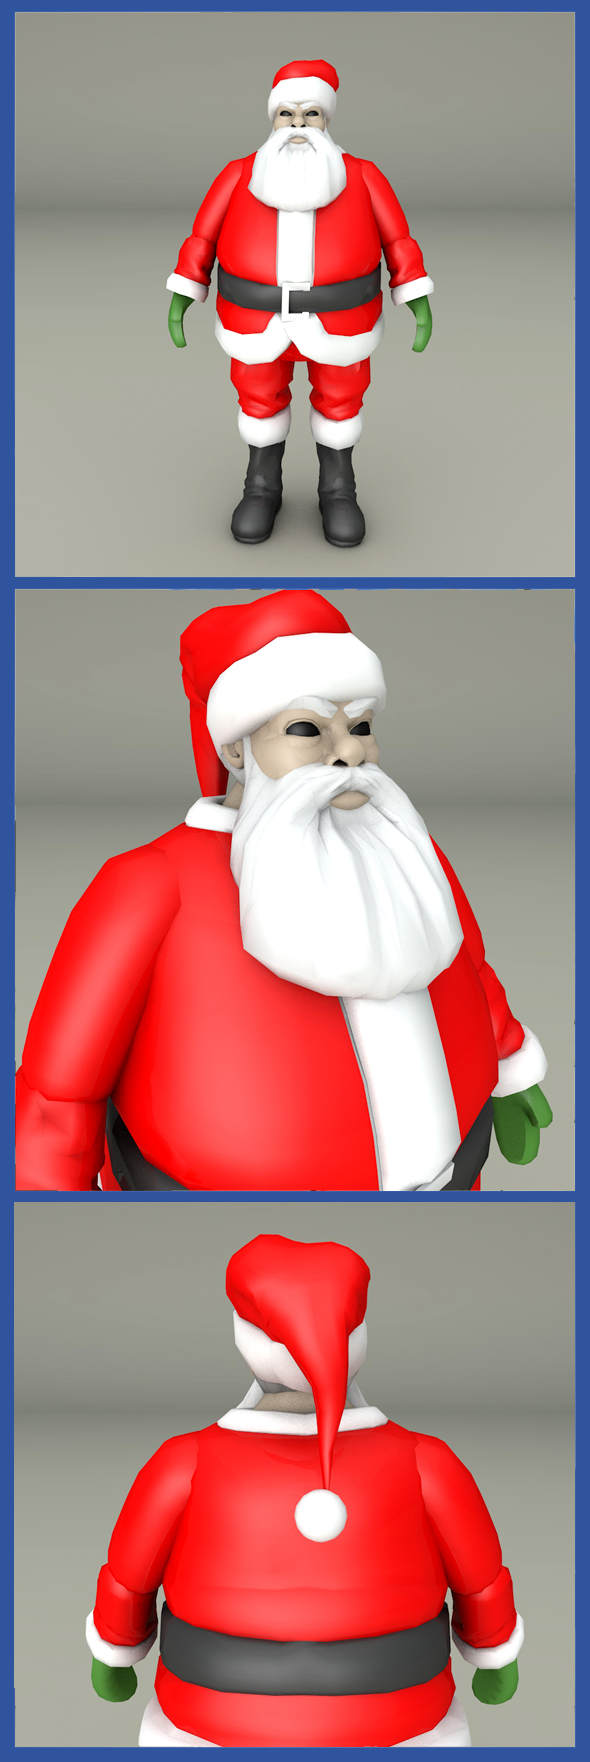 Santa Clause - 3Docean 19544070